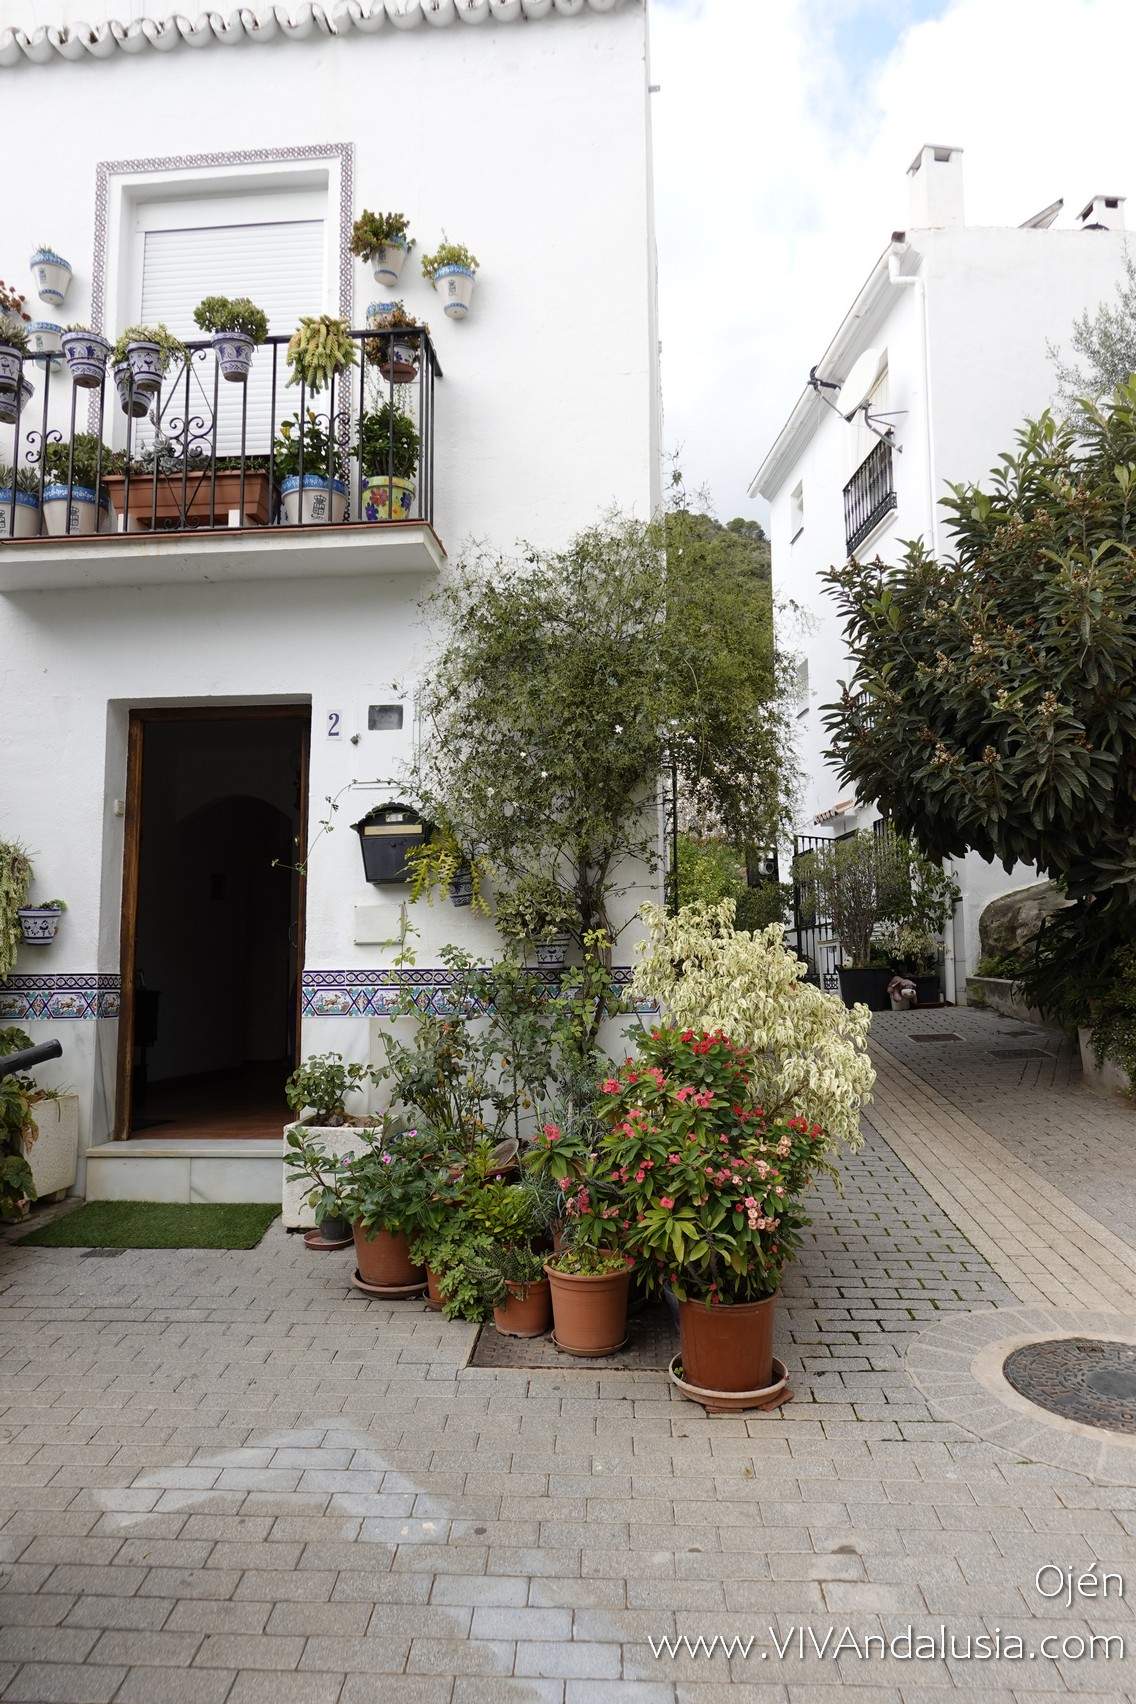 Op zoek om een huis te kopen in Spanje? Het is goedkoper in Andalusië dankzij nieuwe belastingverlagingen.